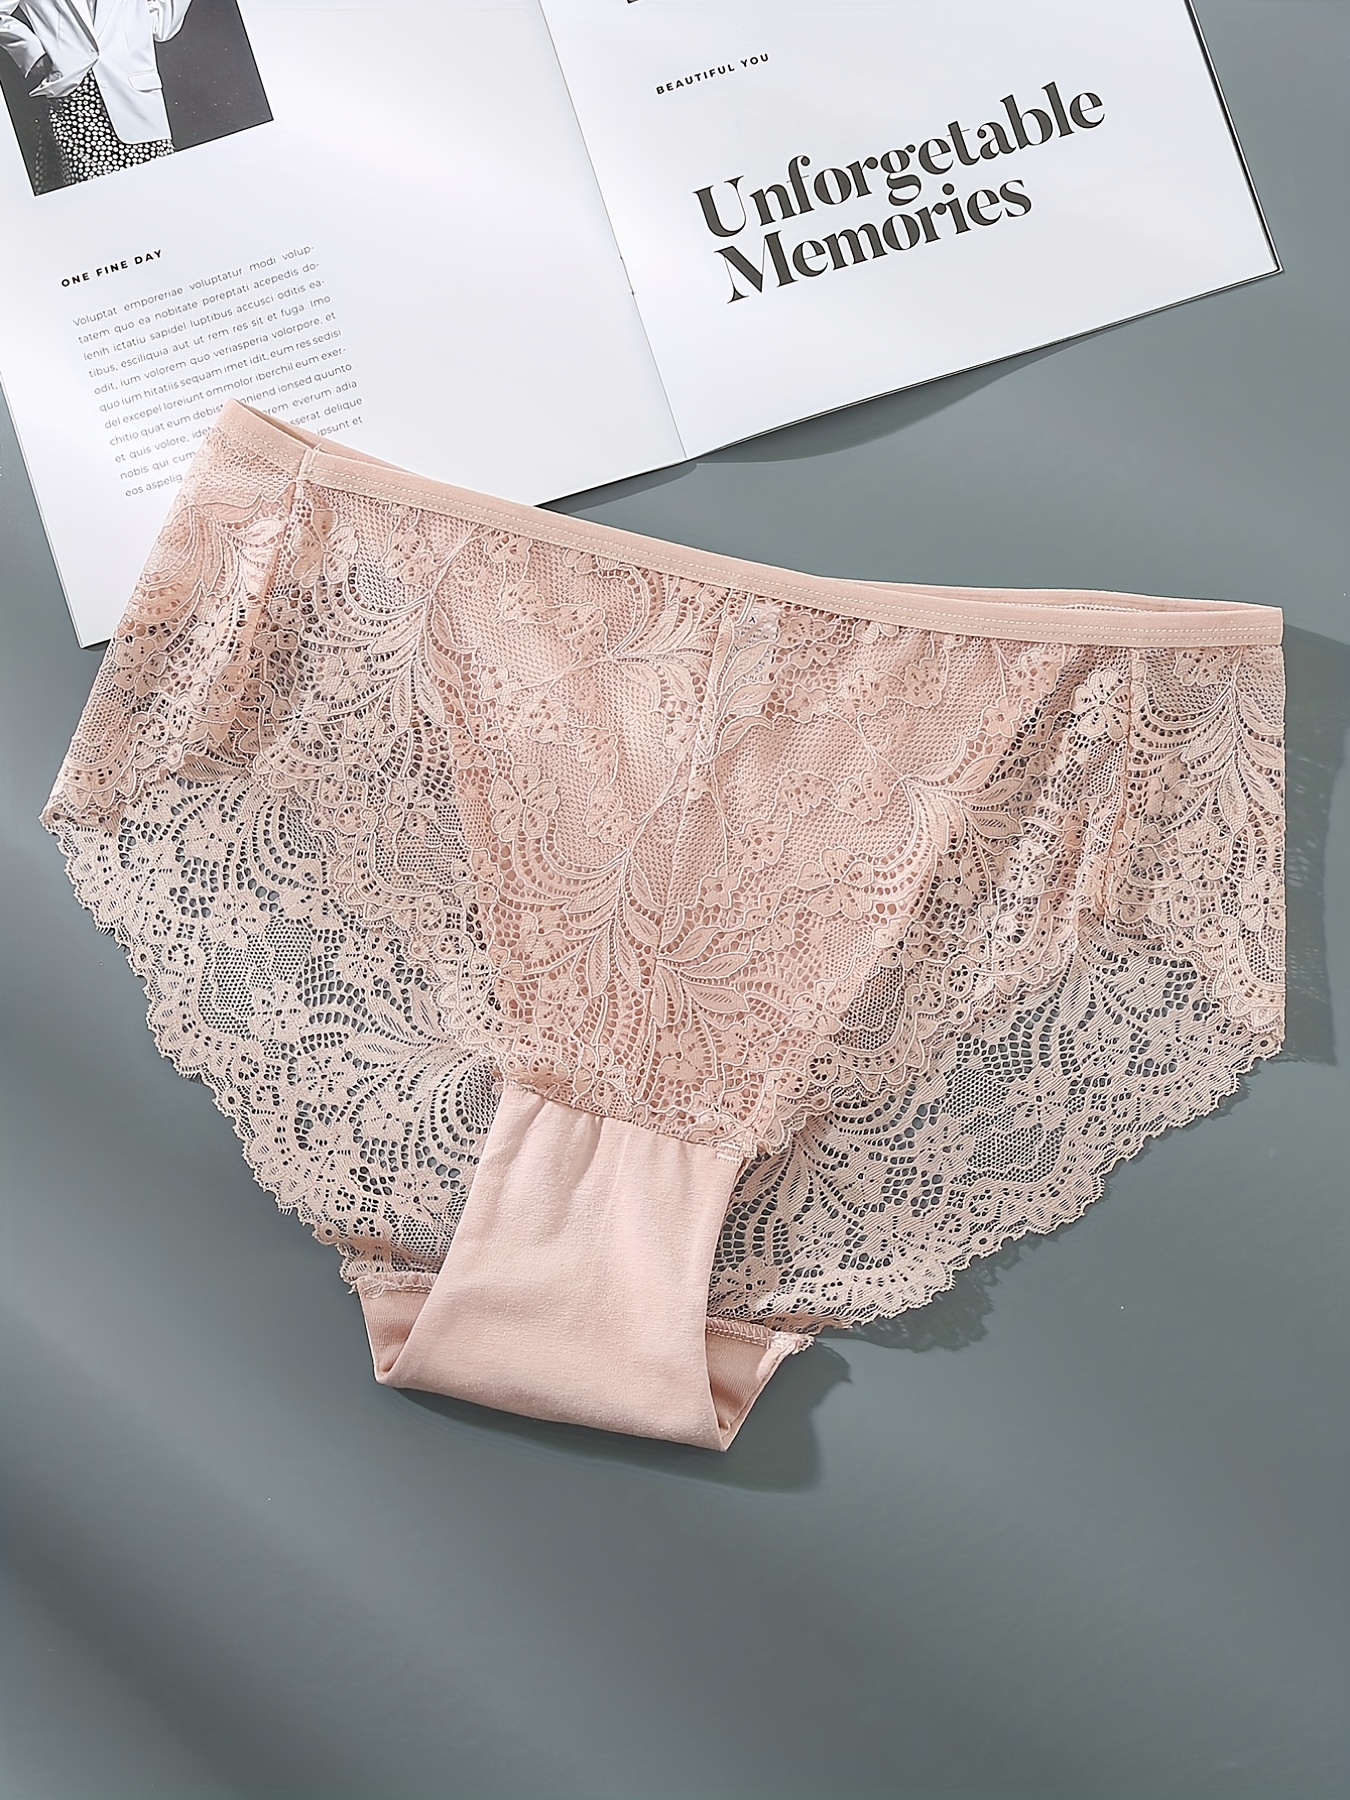 NECHOLOGY Panties For Women Plus Size Women Floral Lace Briefs